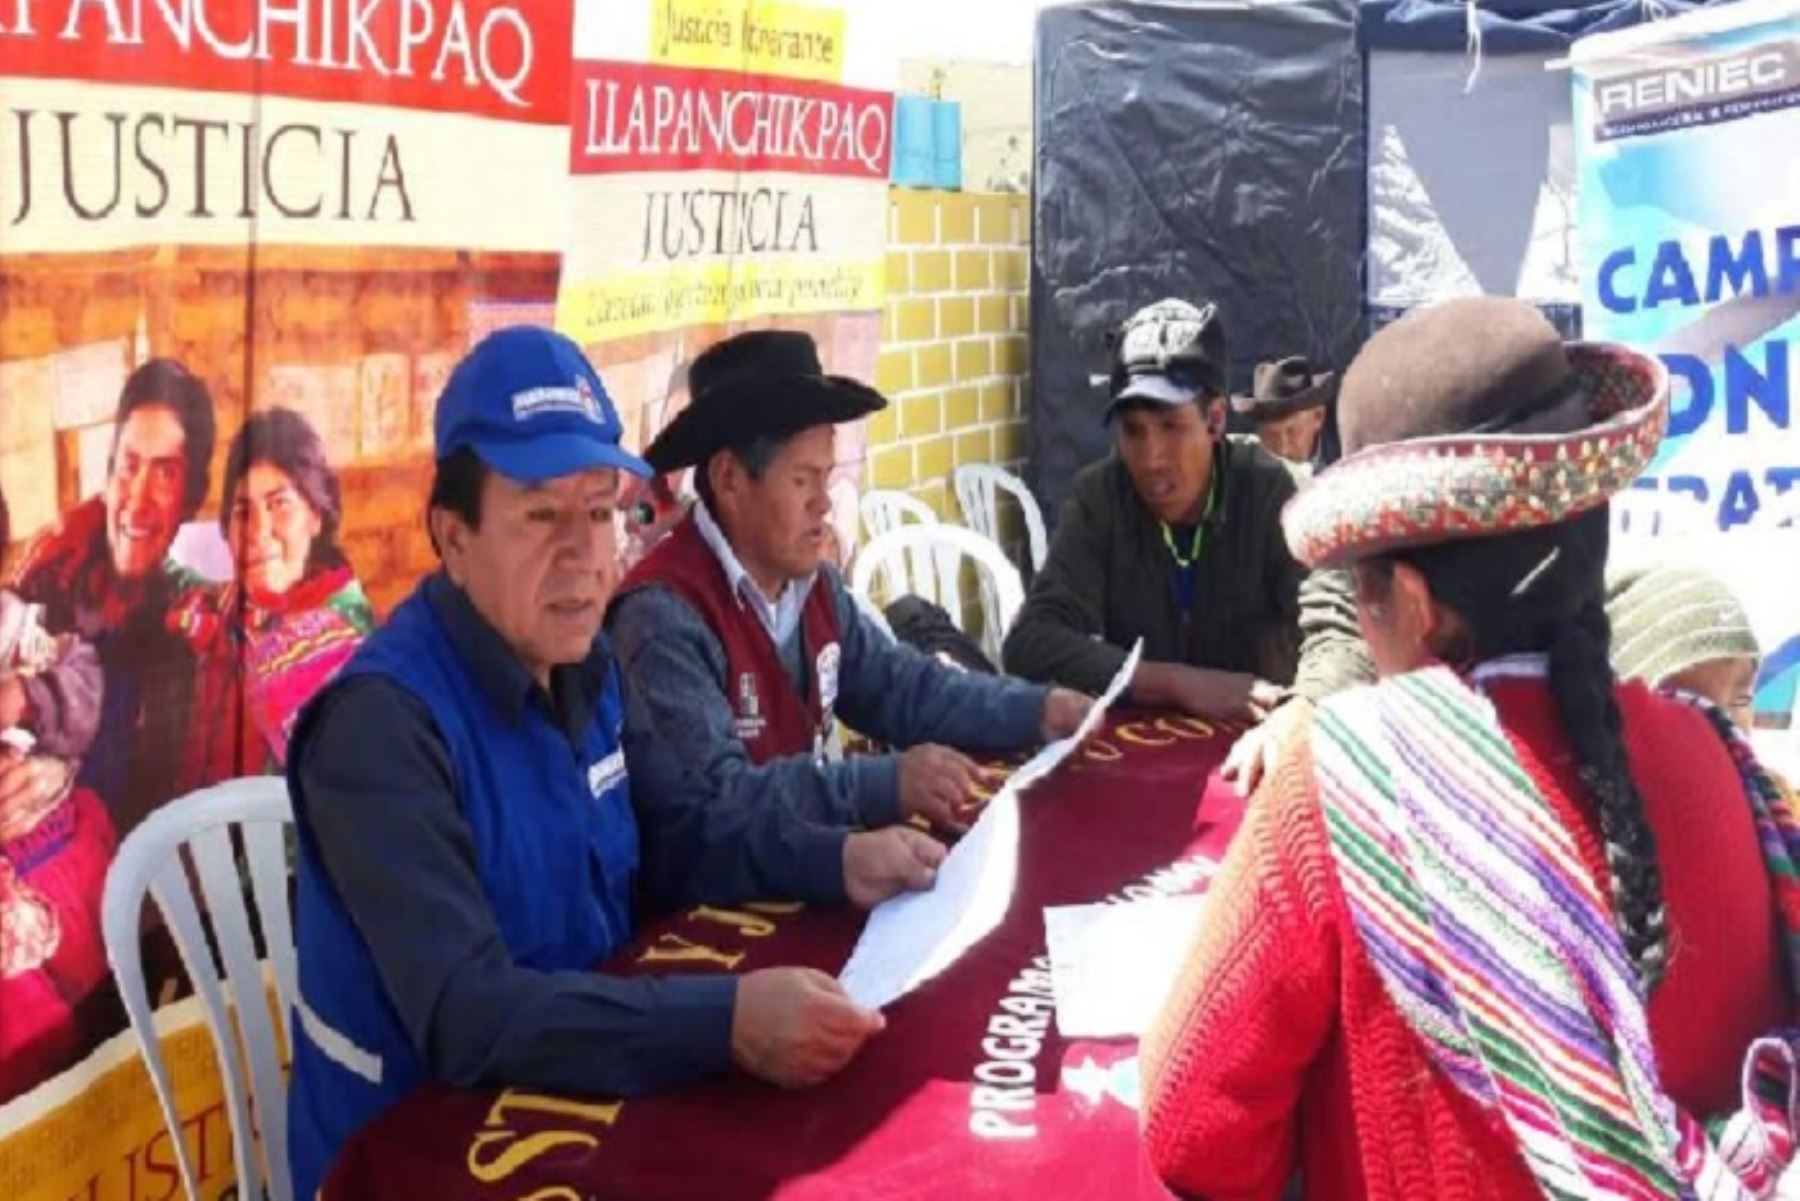 Todos los participantes en la feria atienden a la población en quechua.